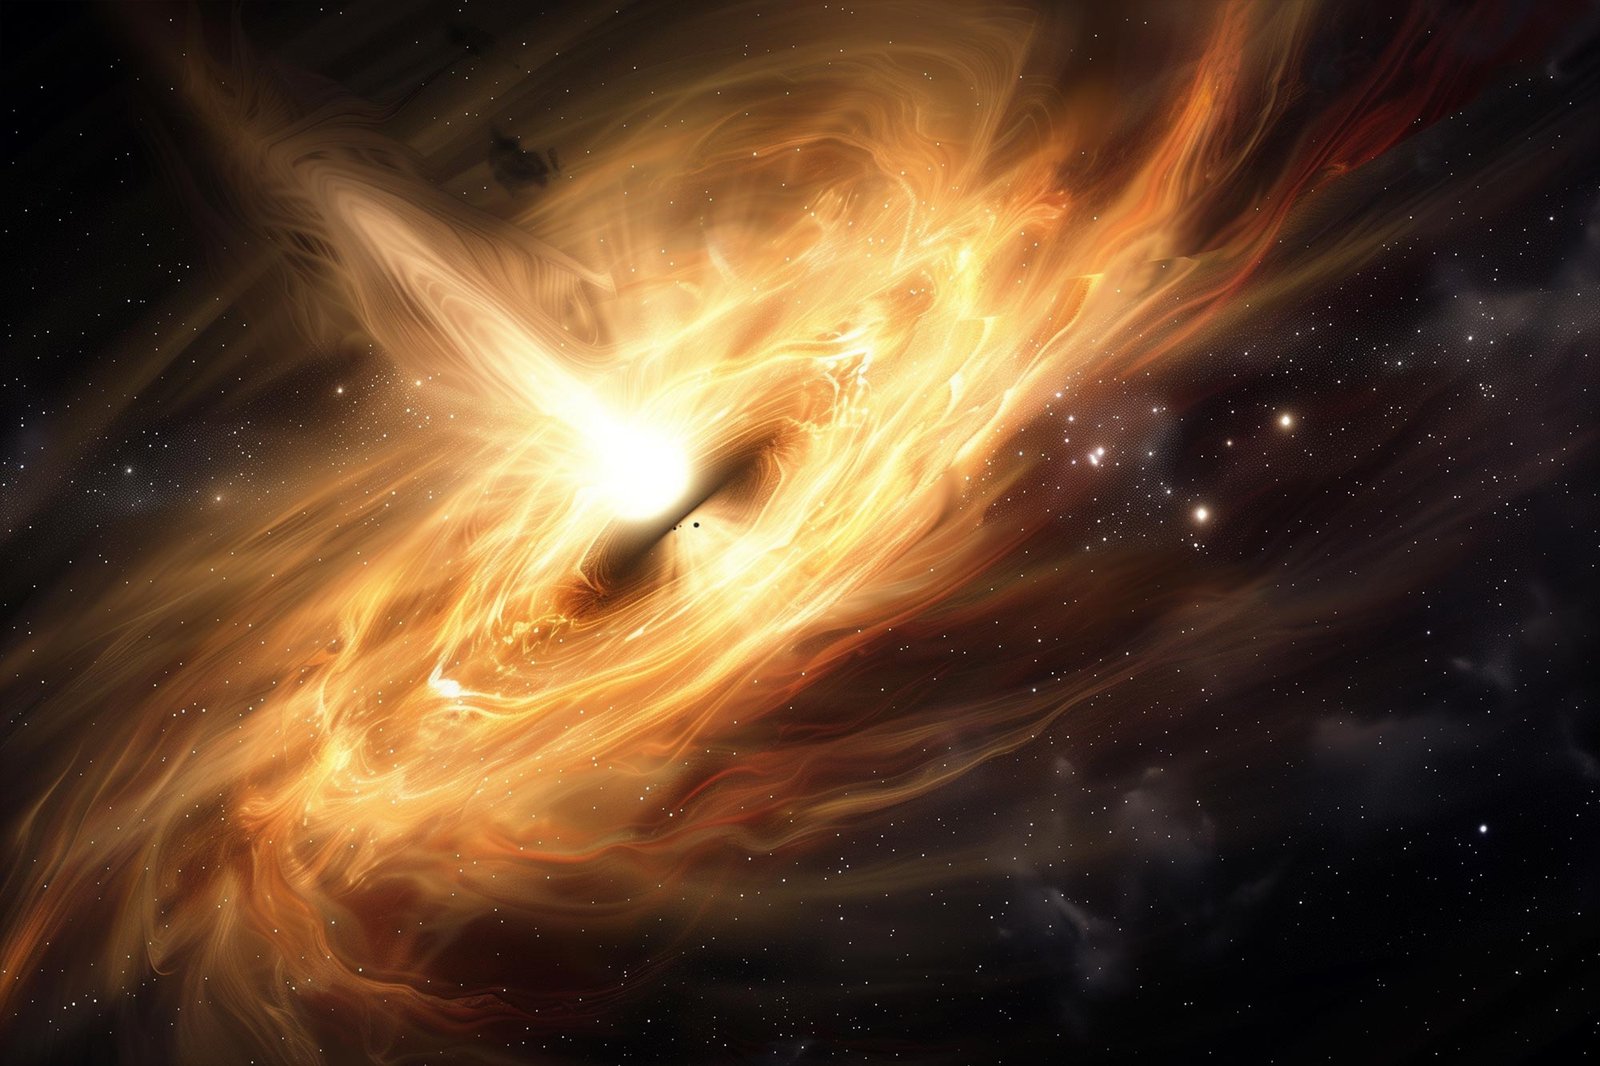 Witnessing a Massive Black Hole’s Dramatic Awakening